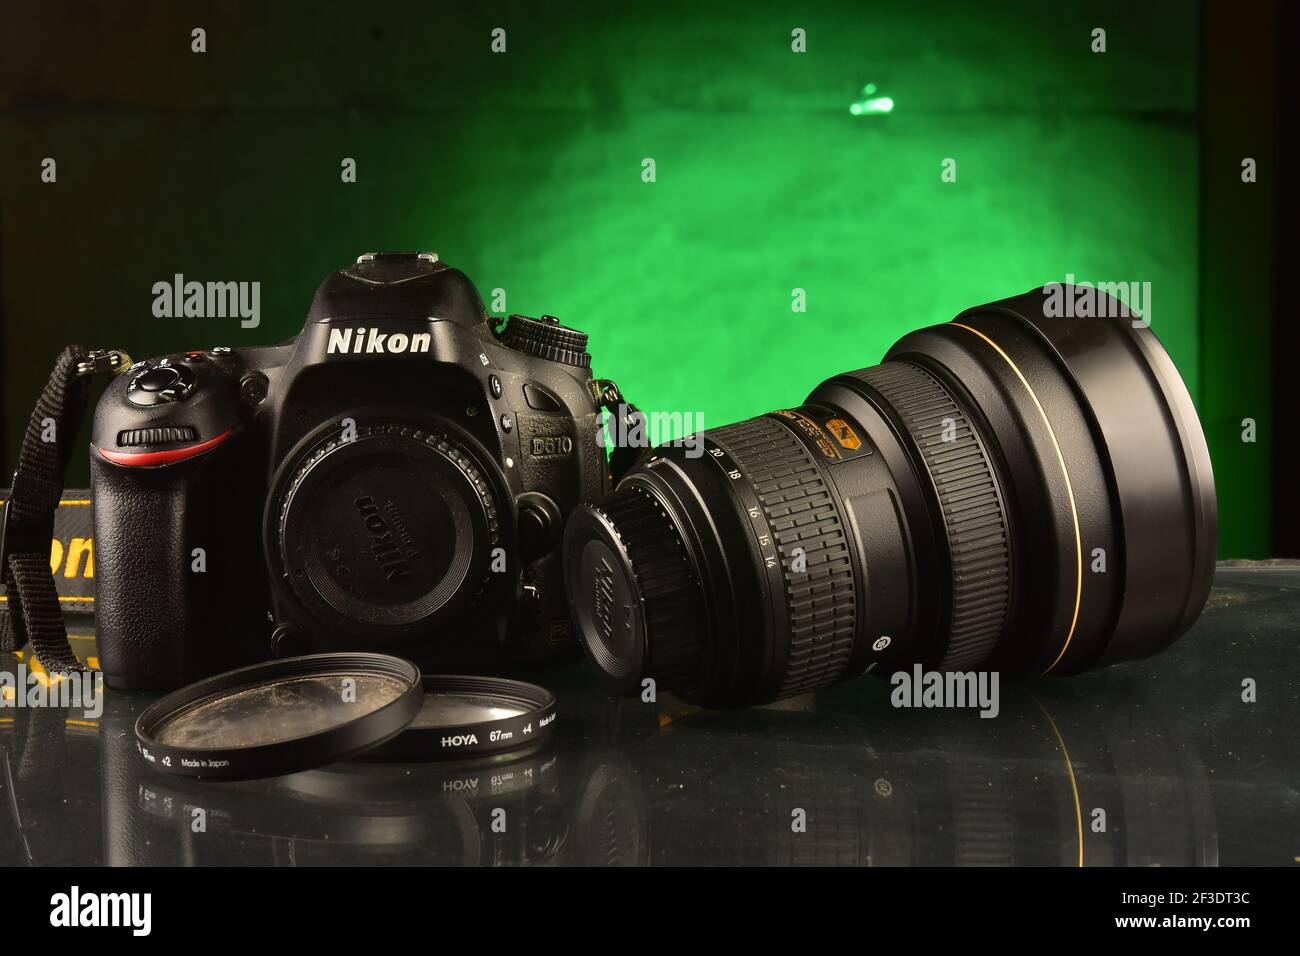 Fotografía de la cámara nikon fotografías e imágenes de alta resolución -  Página 8 - Alamy